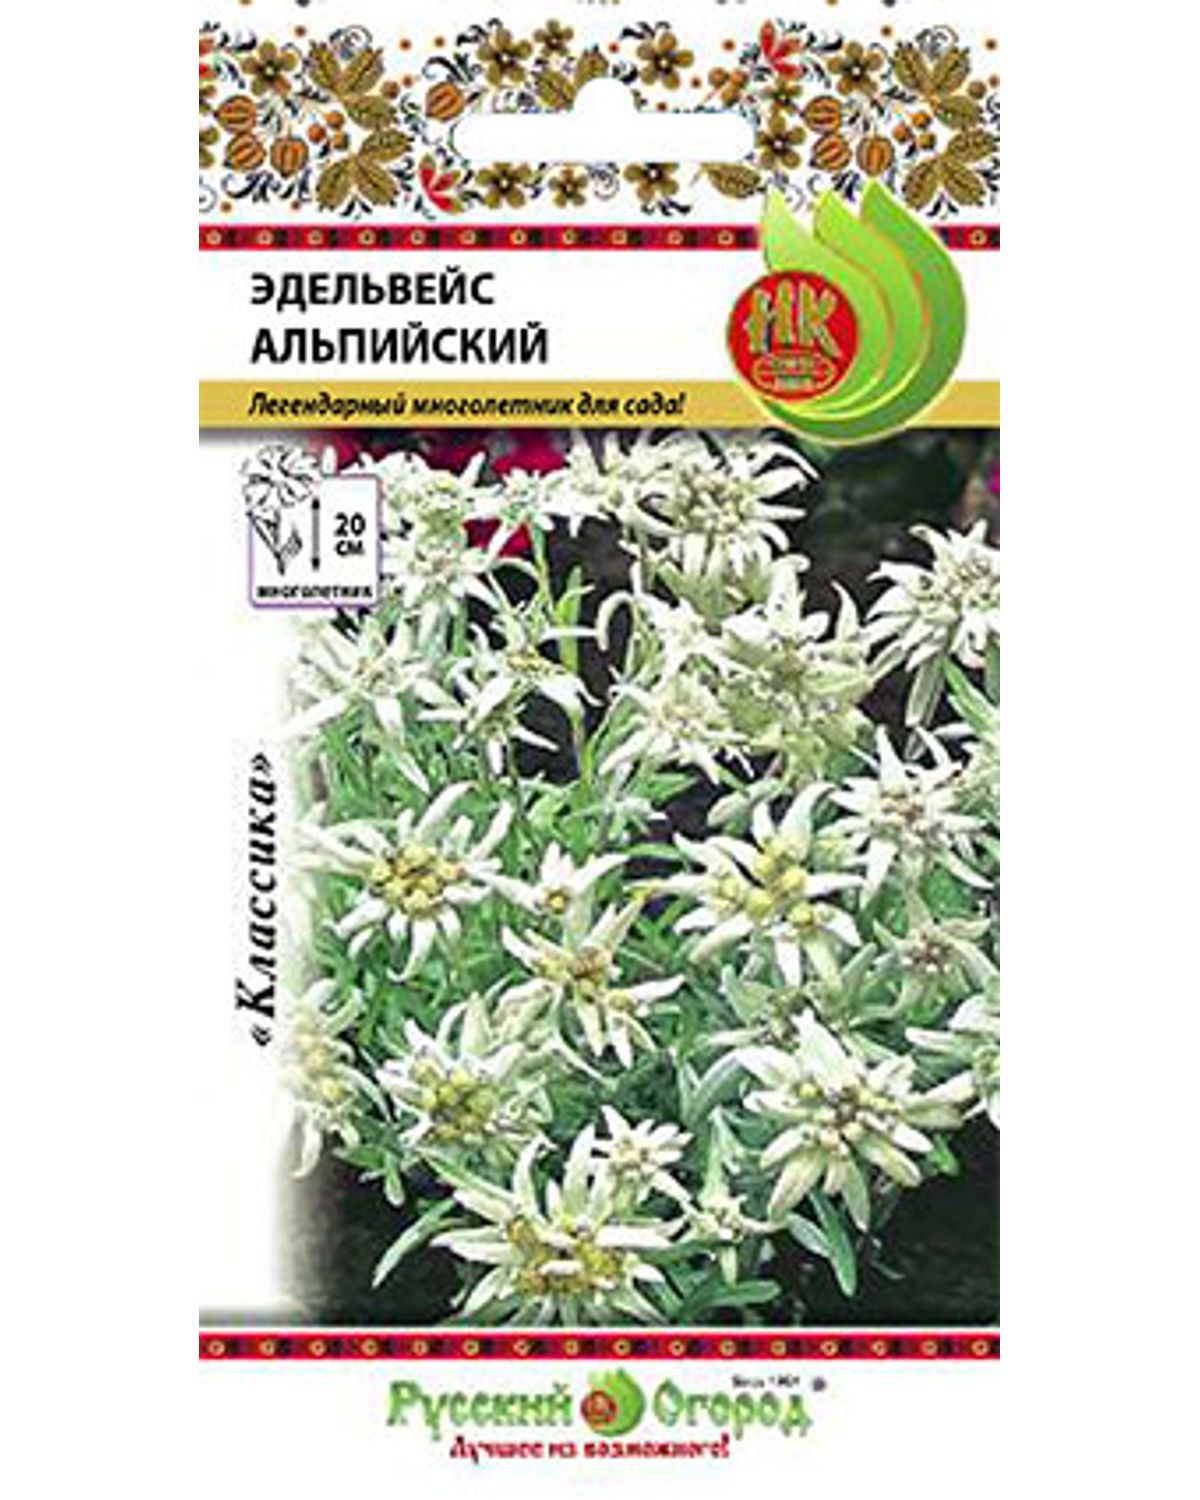 фото Семена цветов эдельвейс альпийский русский огород 703602 0,03 г 1 уп.